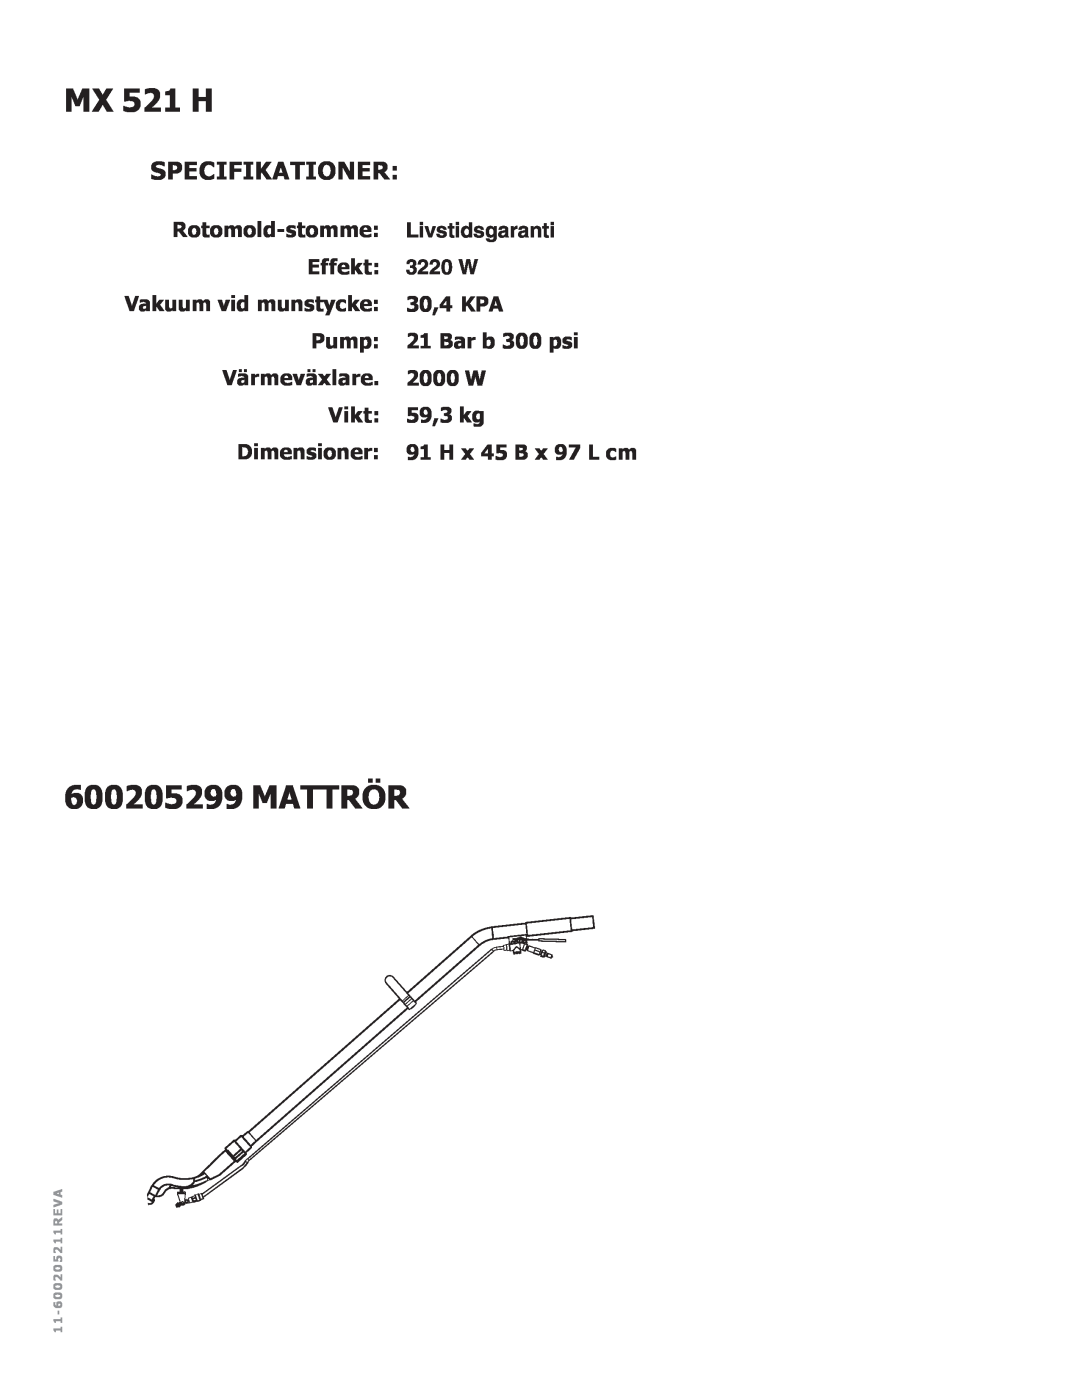 Nilfisk-ALTO MX 521 H manual Mattrör, Specifikationer, Livstidsgaranti, 3220 W 